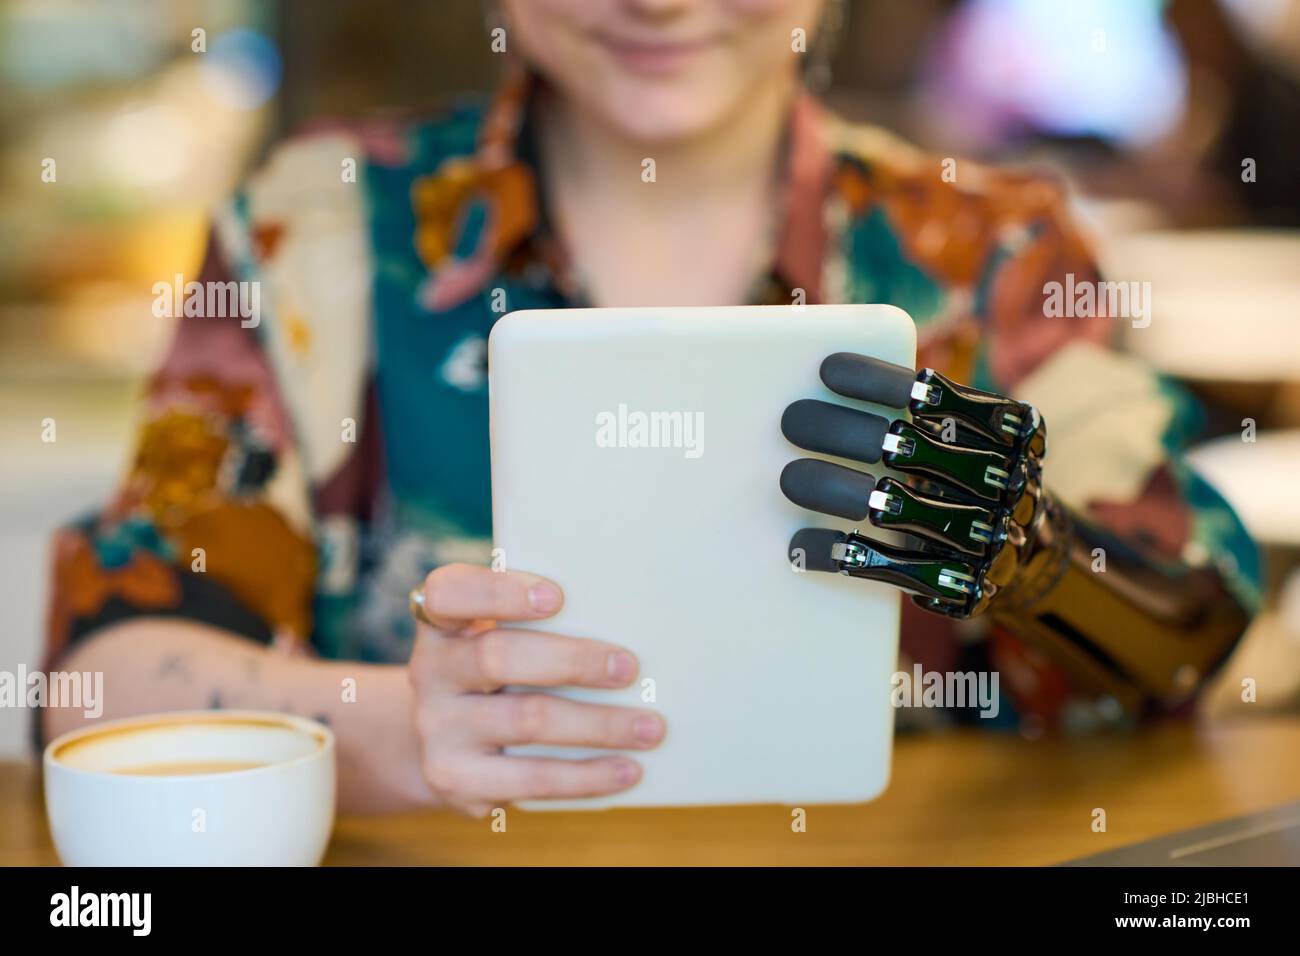 Hände einer jungen Frau mit myoelektrischem Arm, die die Tablette vor sich hält, während sie im Café am Tisch sitzt und Kaffee getrunken hat Stockfoto